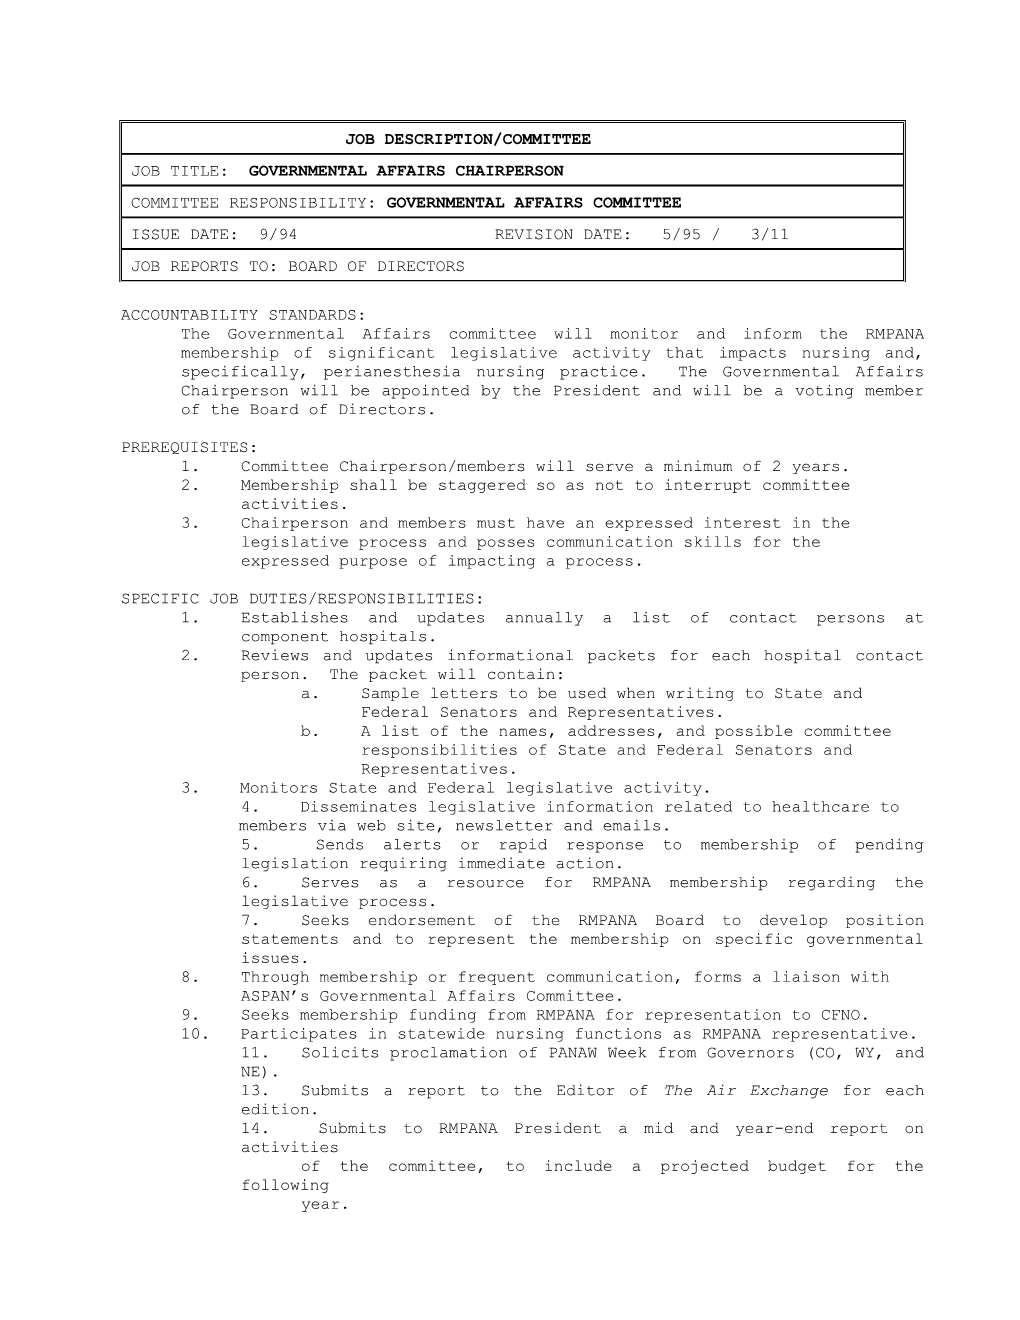 Job Description/Committee Index # Iii B